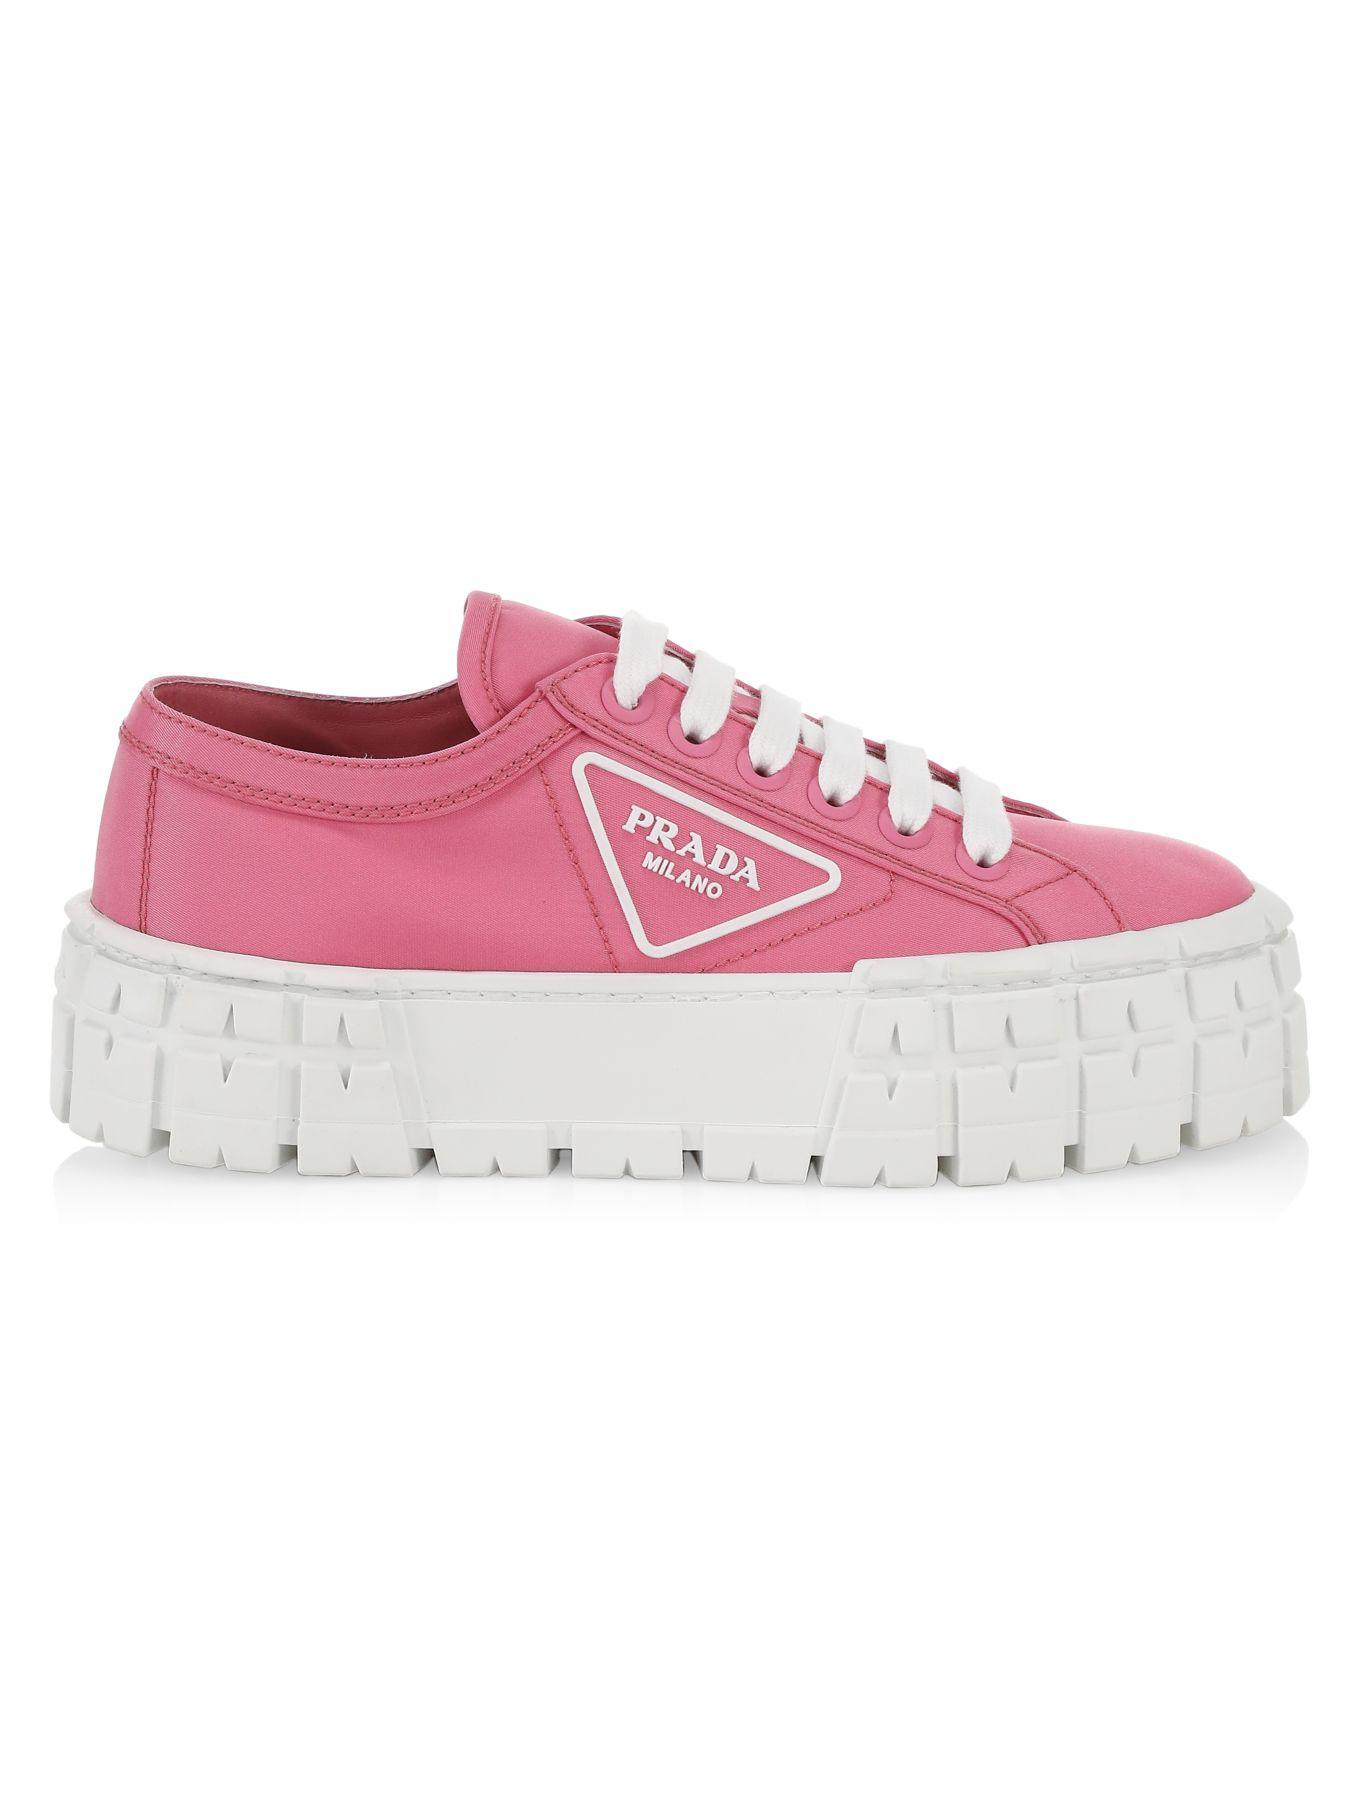 Prada Lug-sole Platform Sneakers in Pink | Lyst